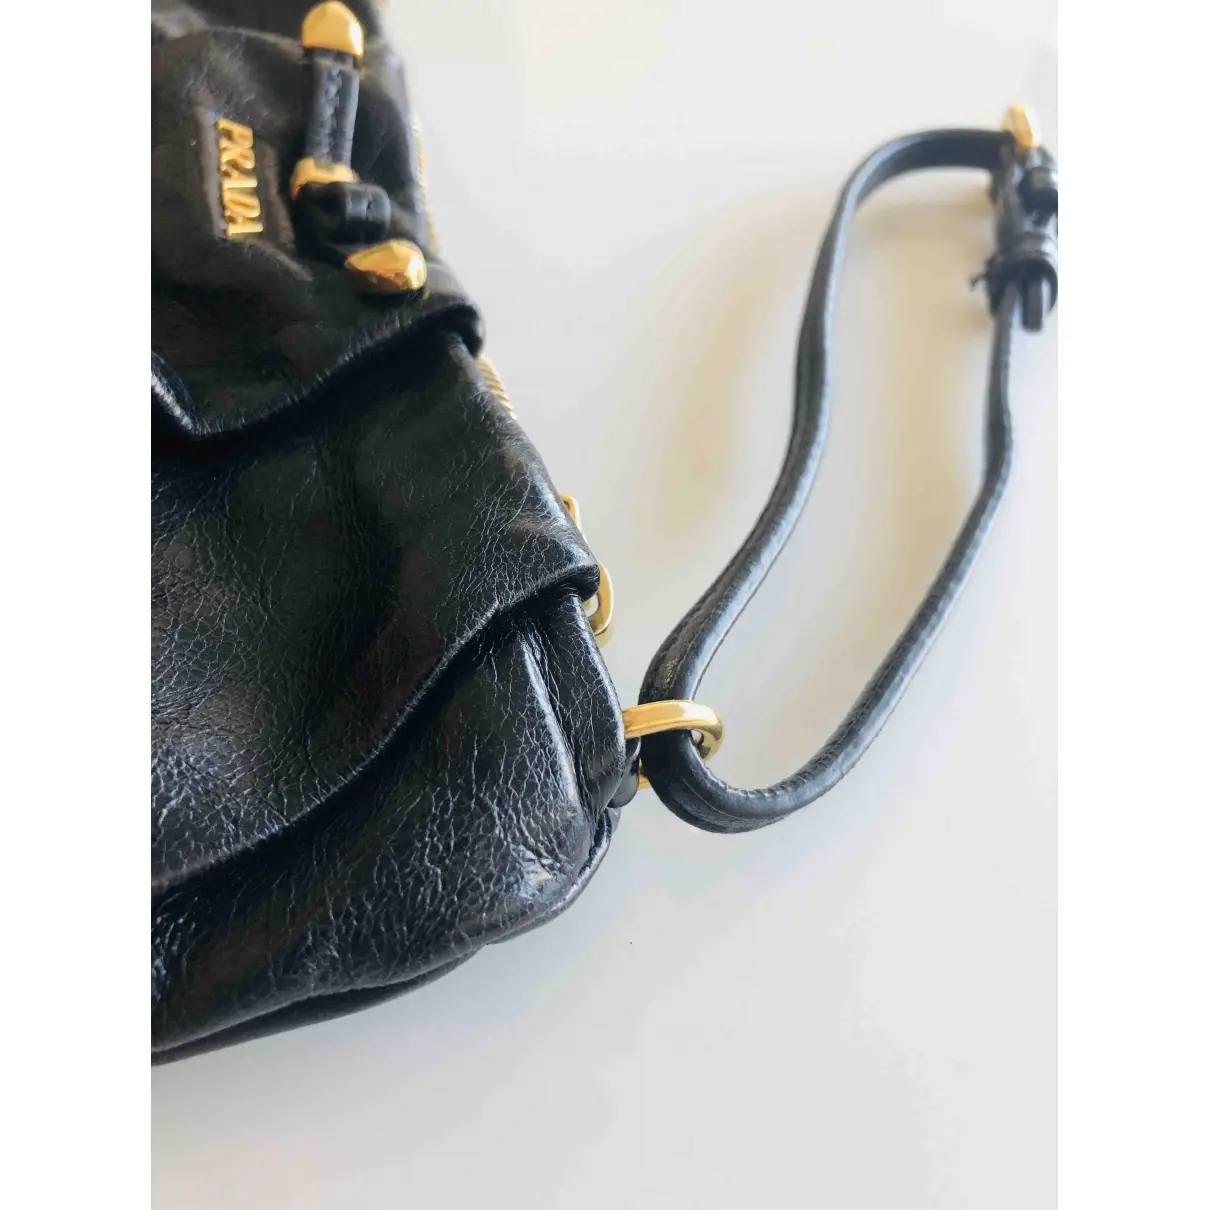 Leather clutch bag Prada